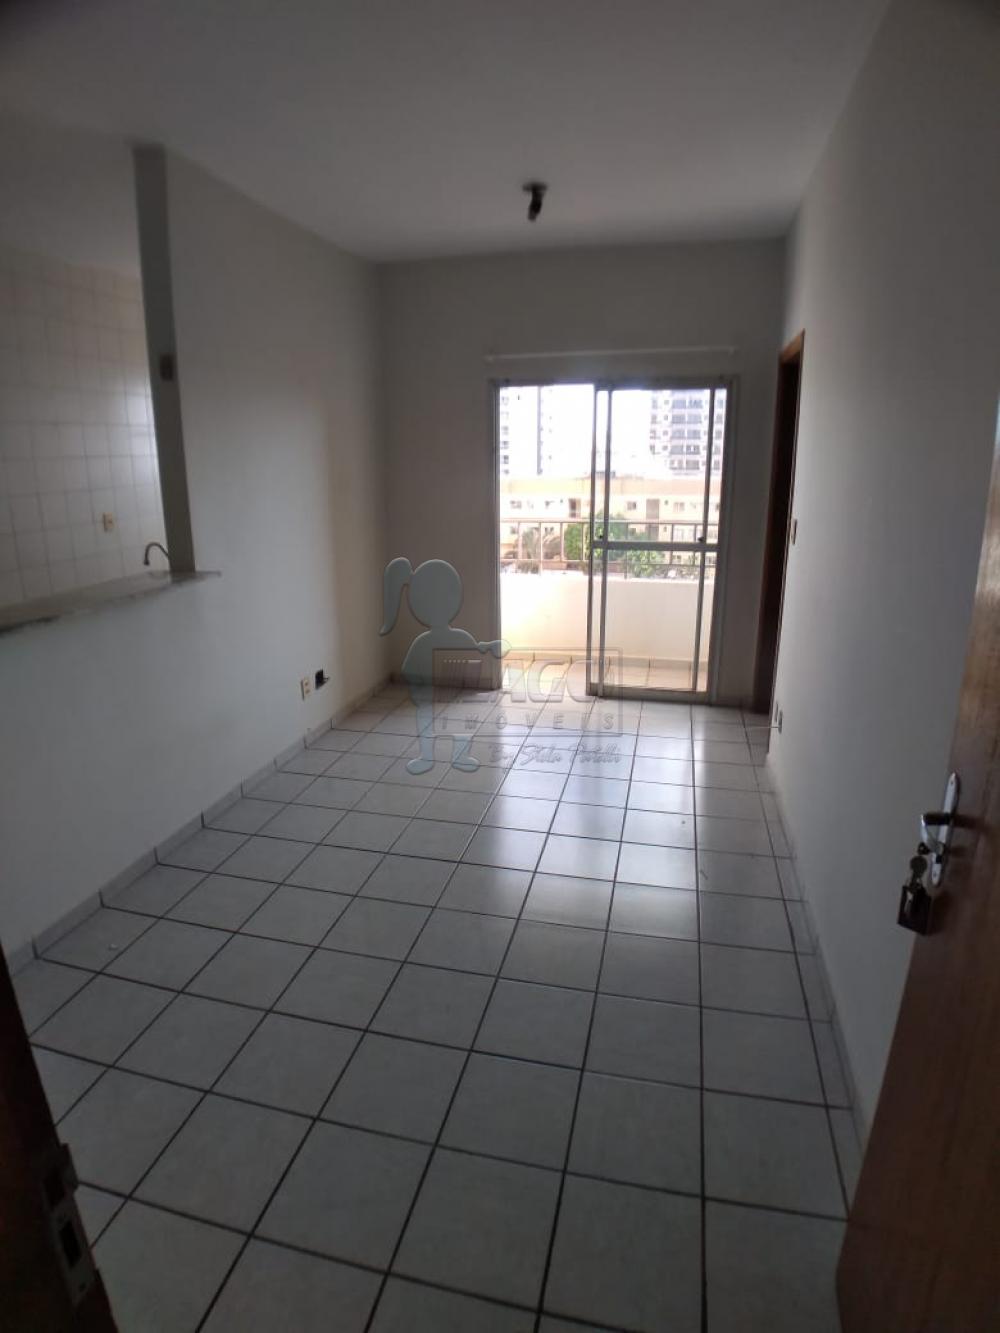 Alugar Apartamentos / Padrão em Ribeirão Preto R$ 630,00 - Foto 1